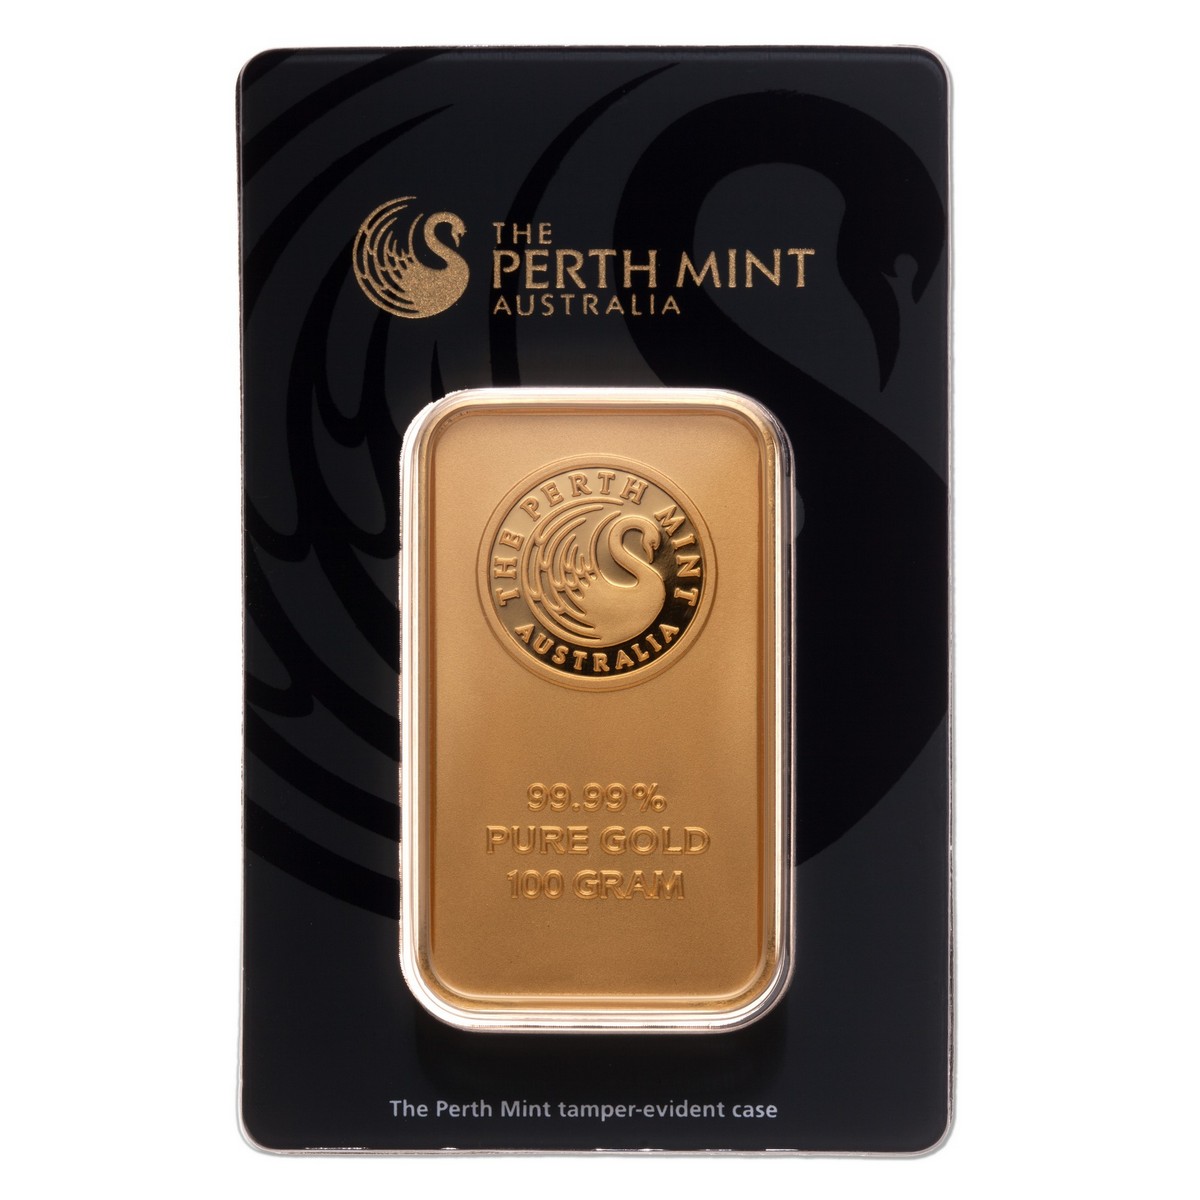 PERTH MINT GOLD BAR, 100 GRAM - Perth Mint